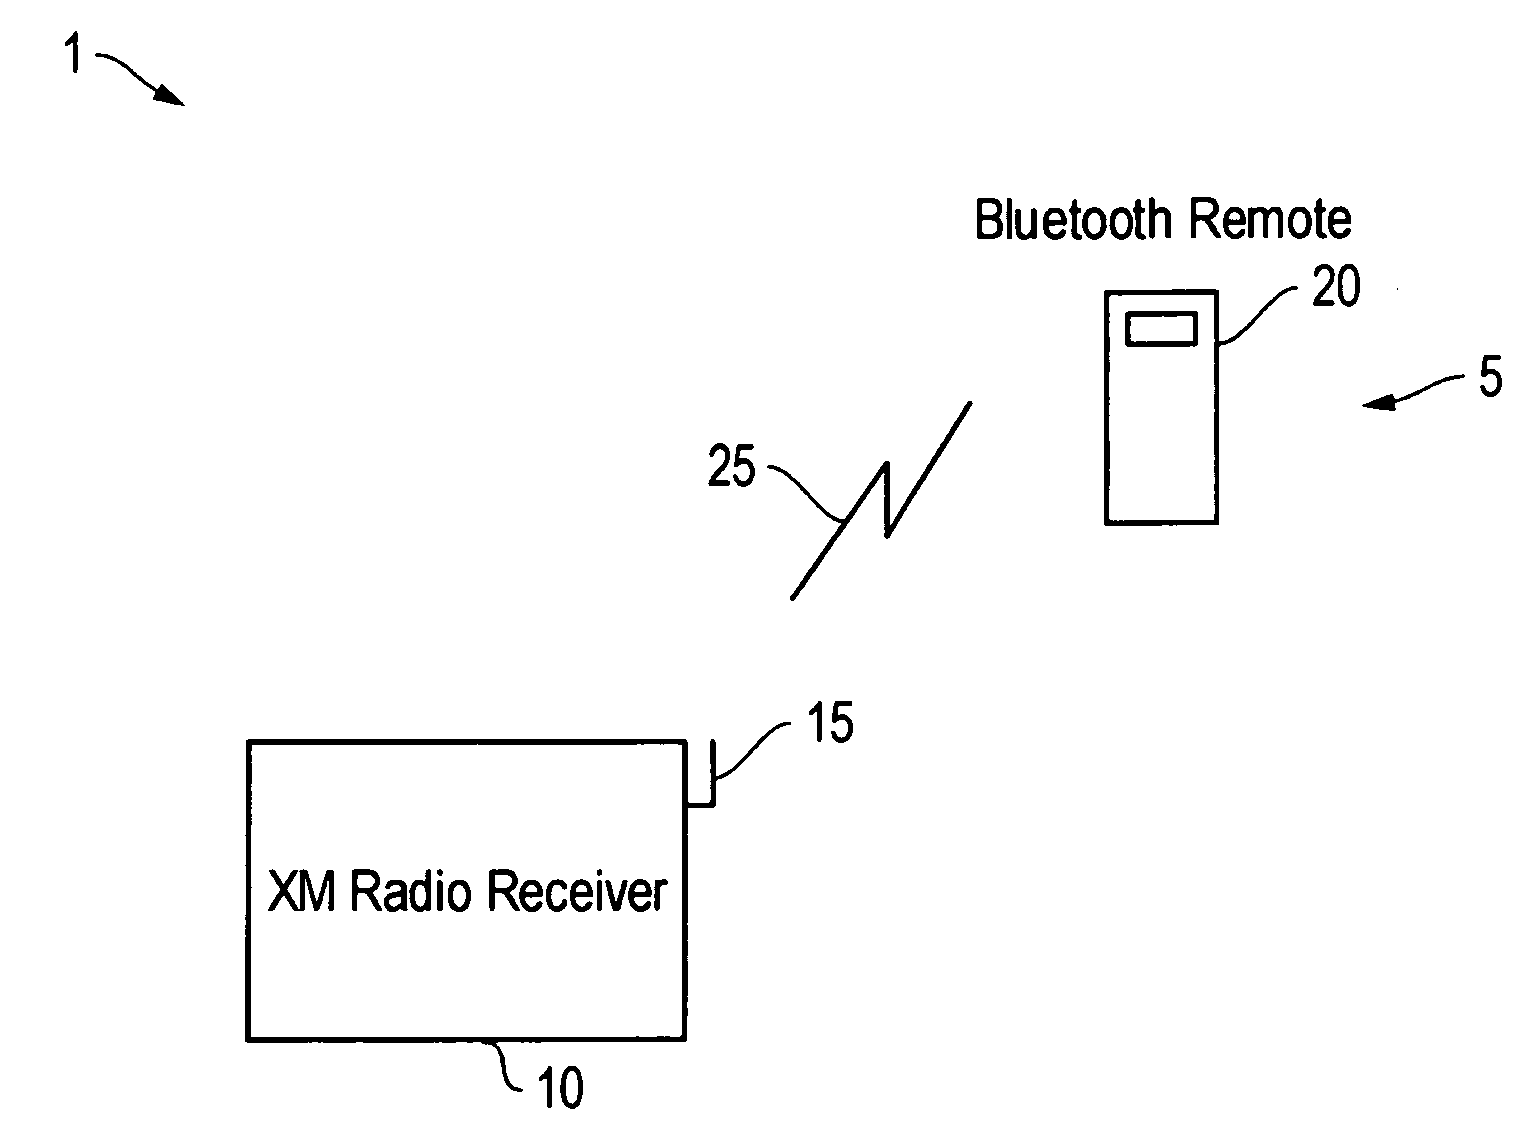 Bluetooth satellite radio remote controller